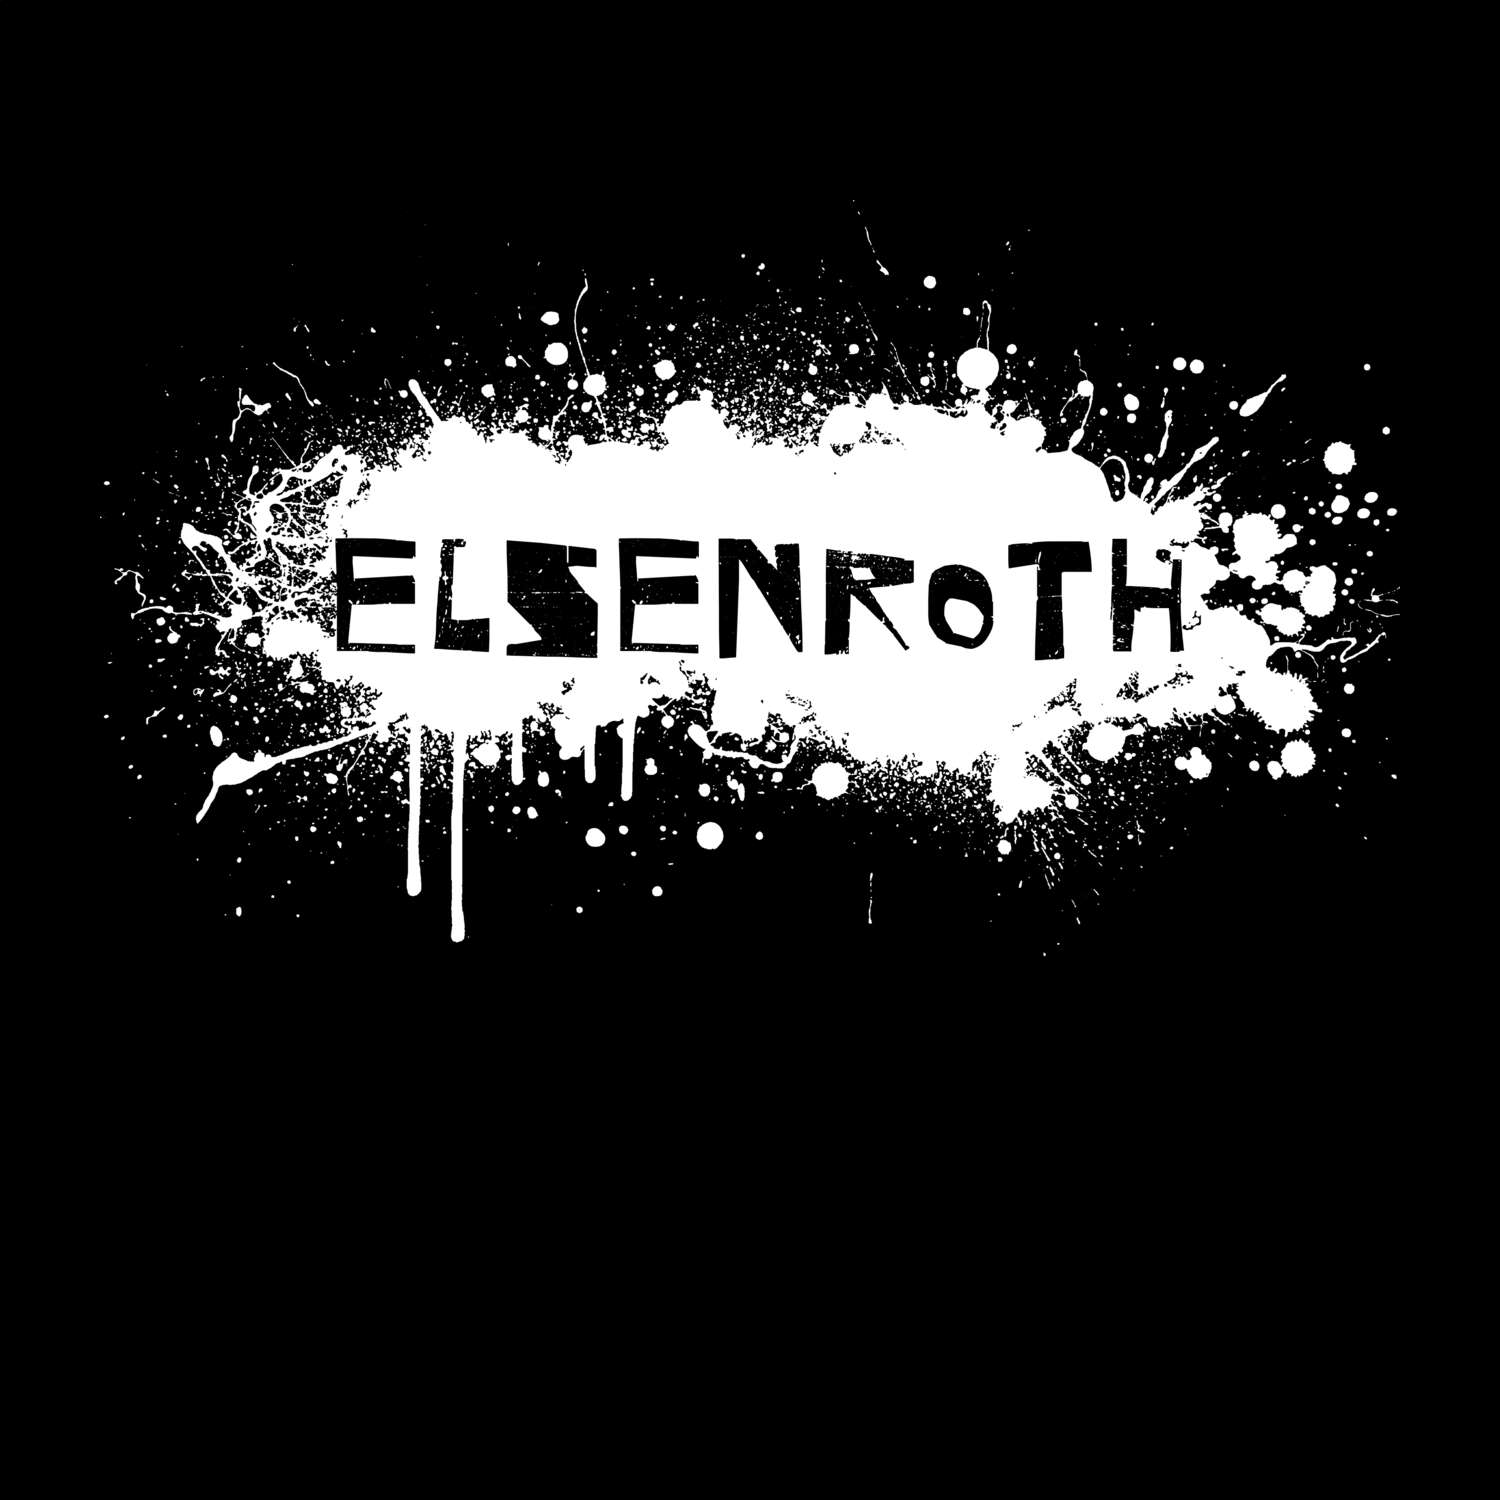 Elsenroth T-Shirt »Paint Splash Punk«